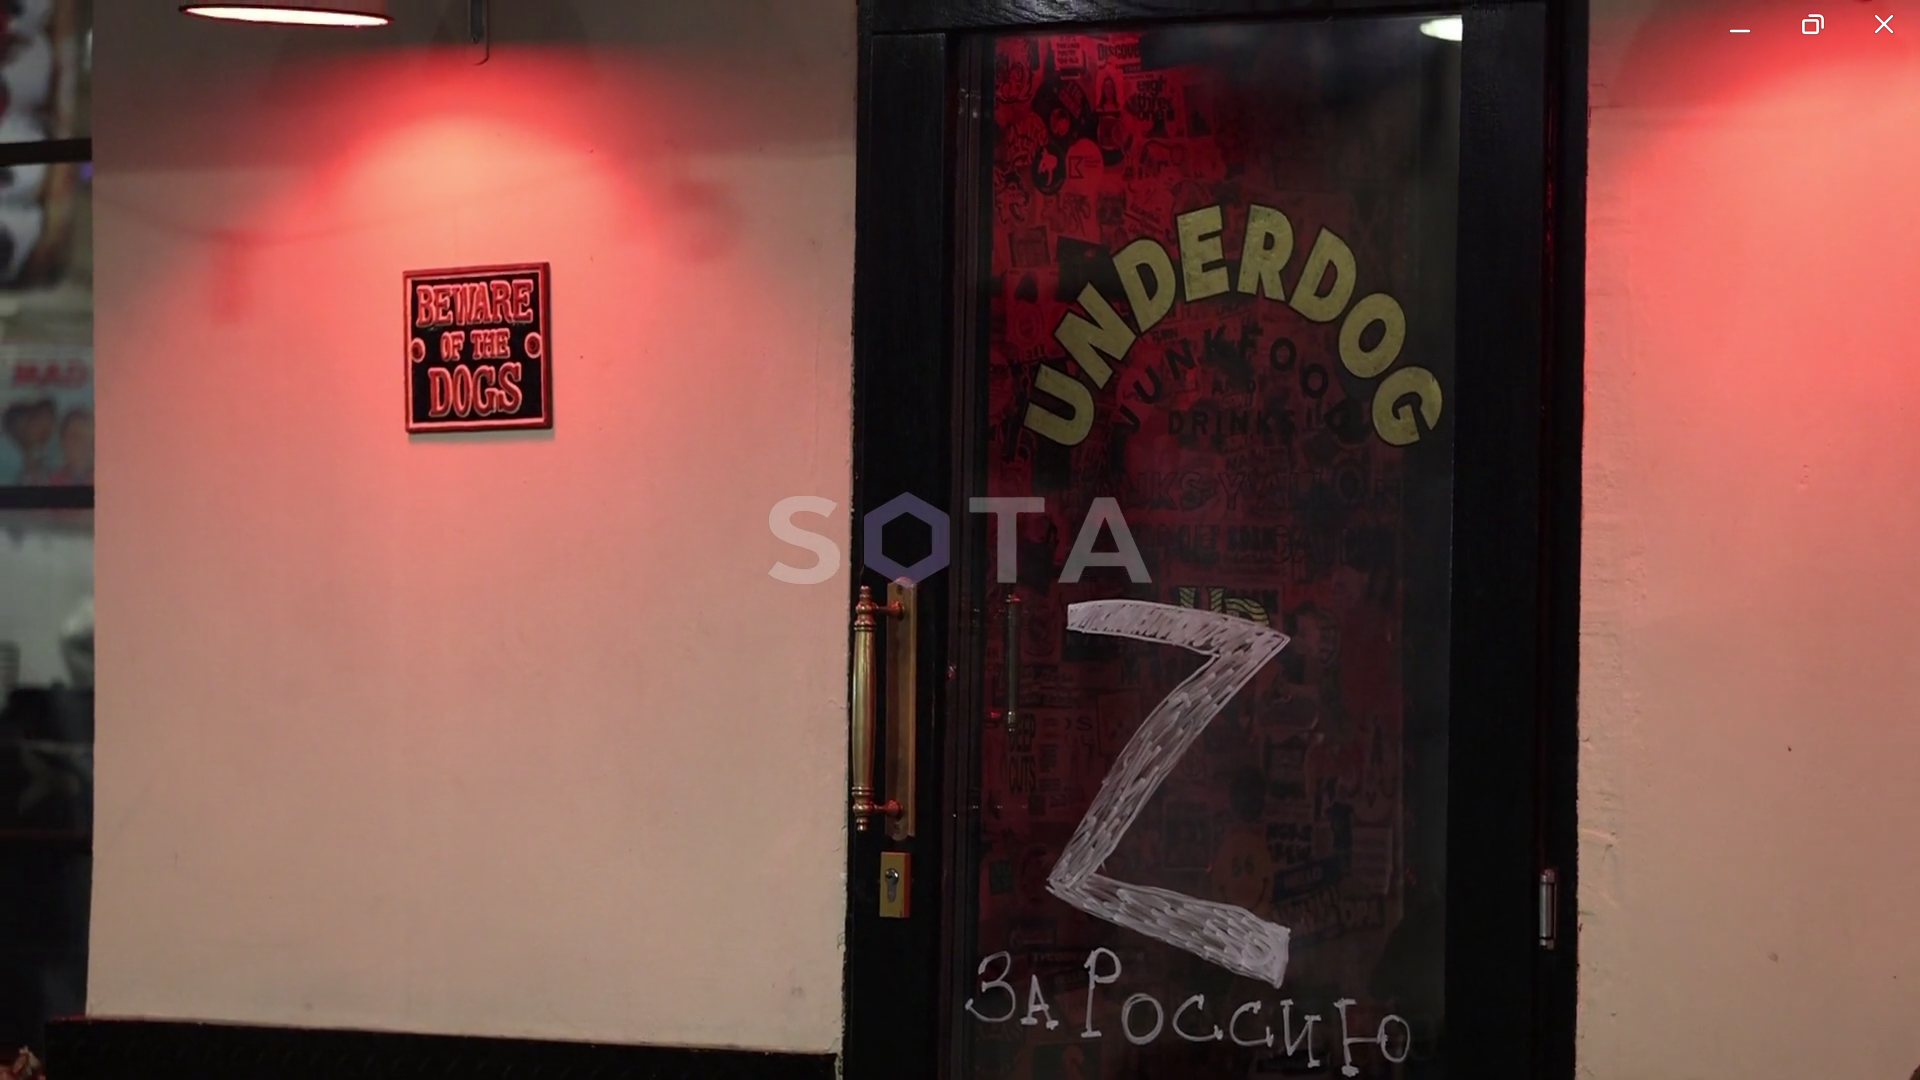 Дверь бара Underdog s Москве после визита силовиков. Скришот из видео SOTA.